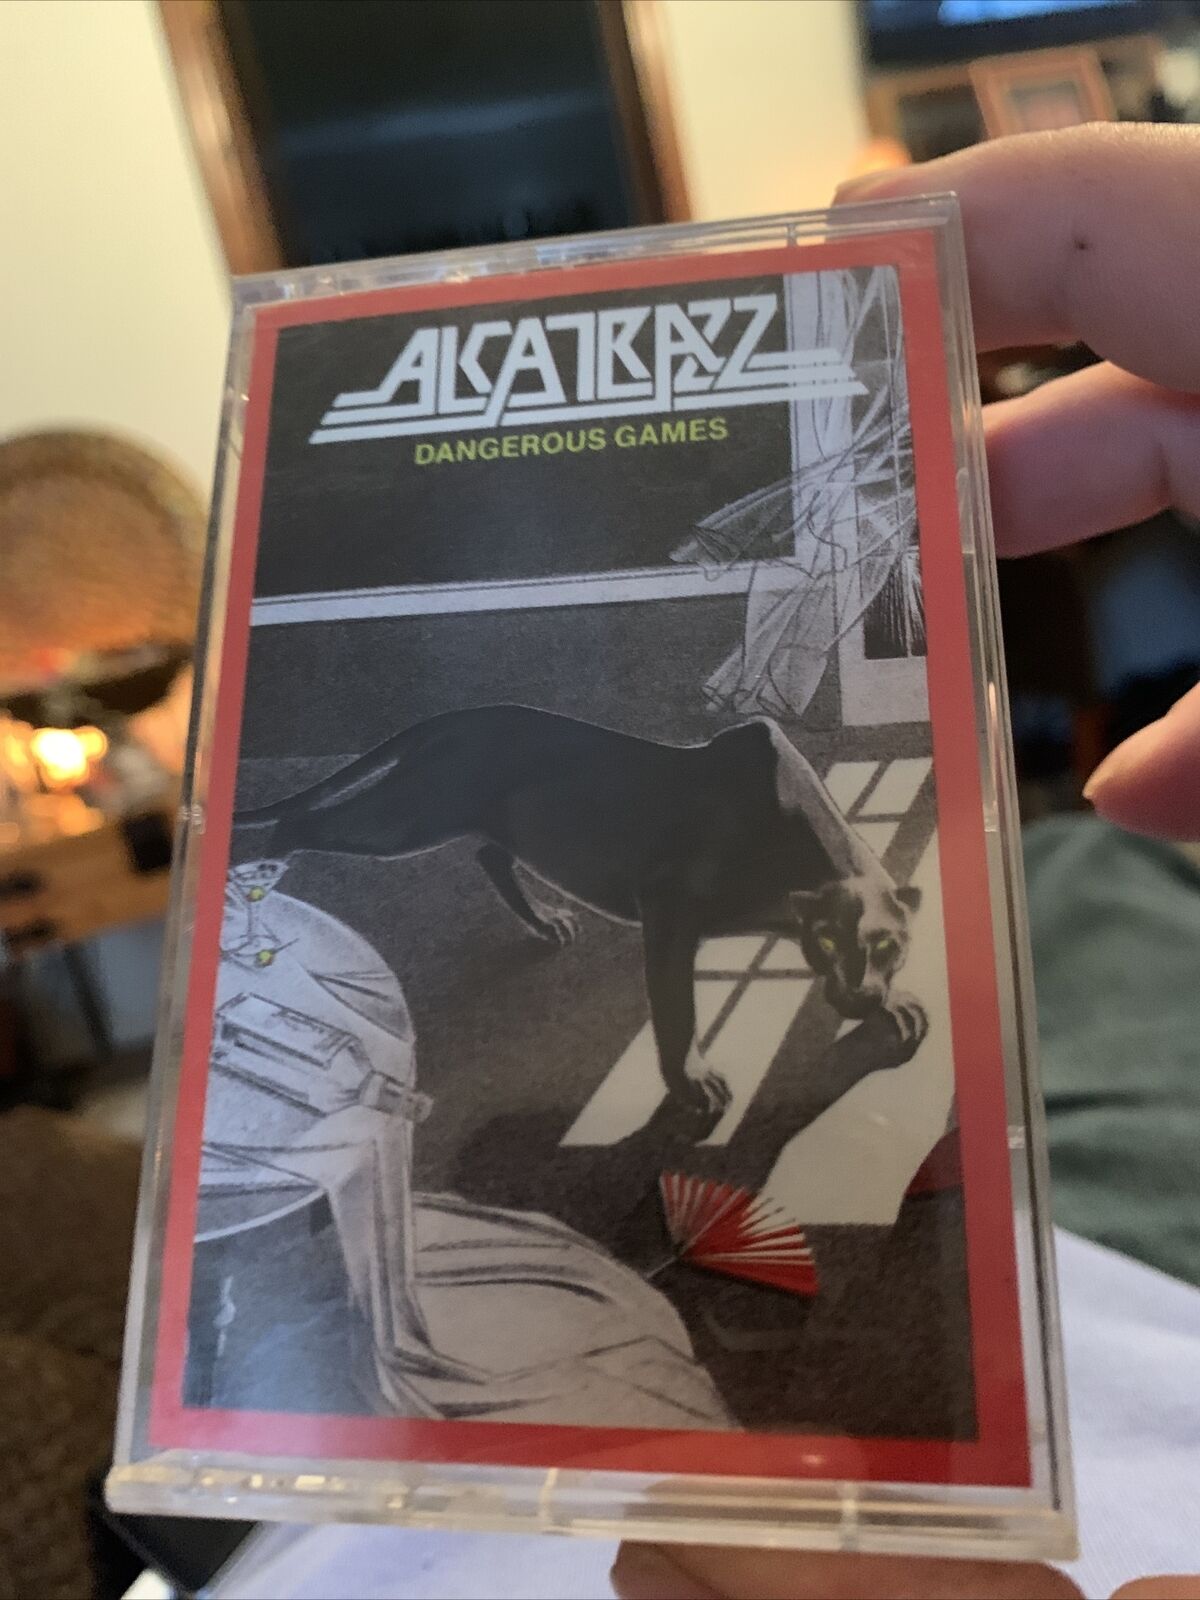 1986 Alcatrazz - Dangerous Games - Cassette - Vintage